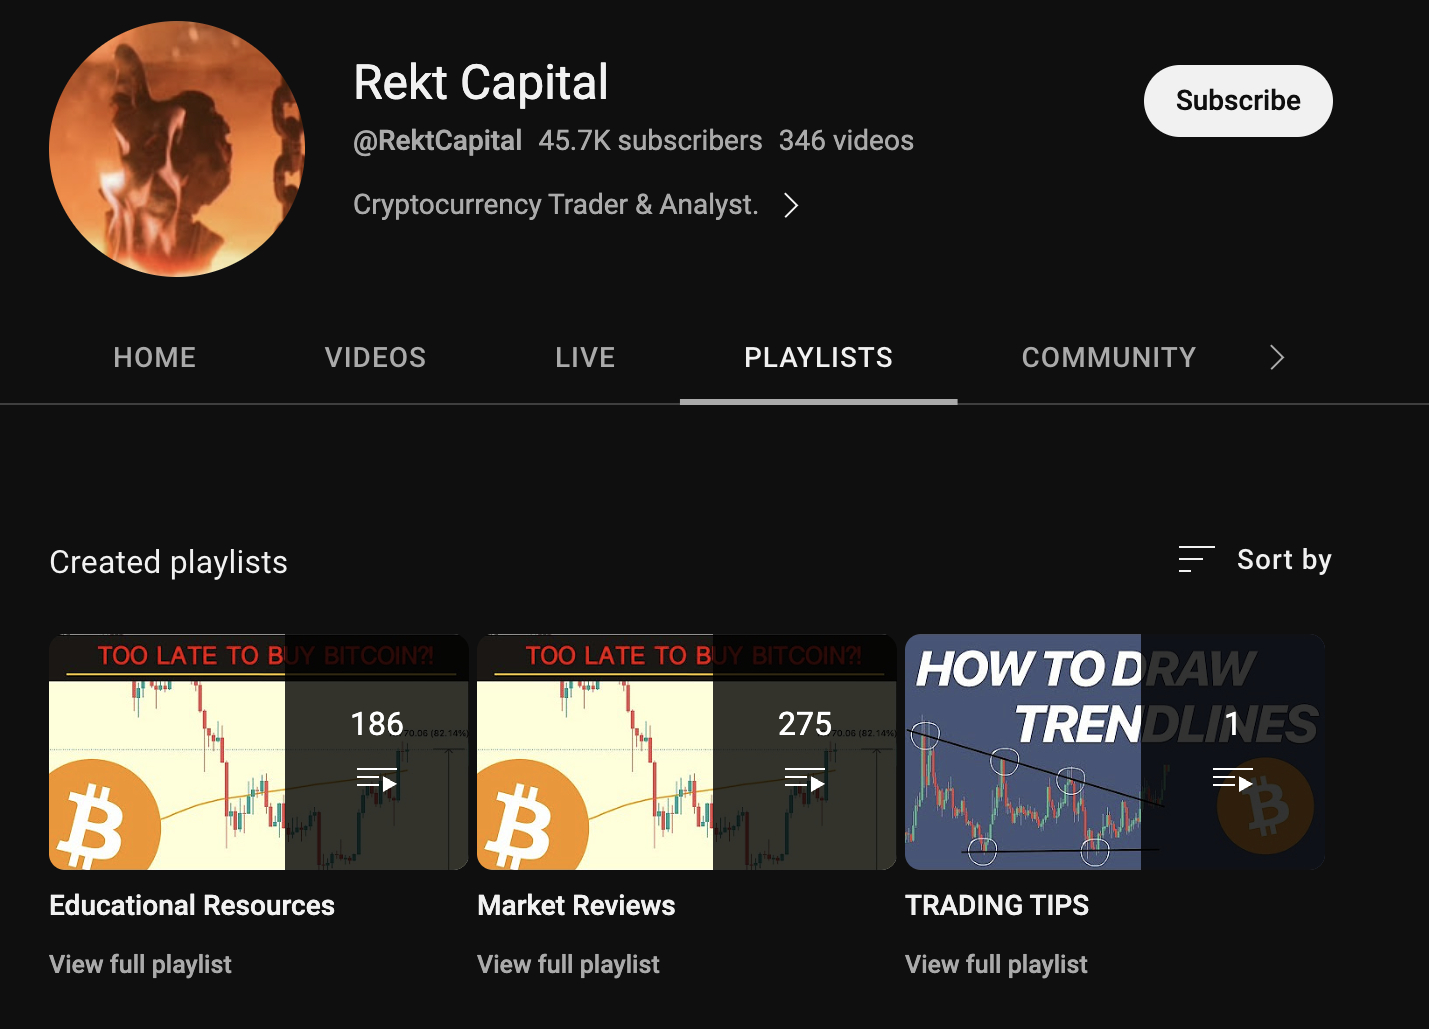 Rekt Capital YouTube channel